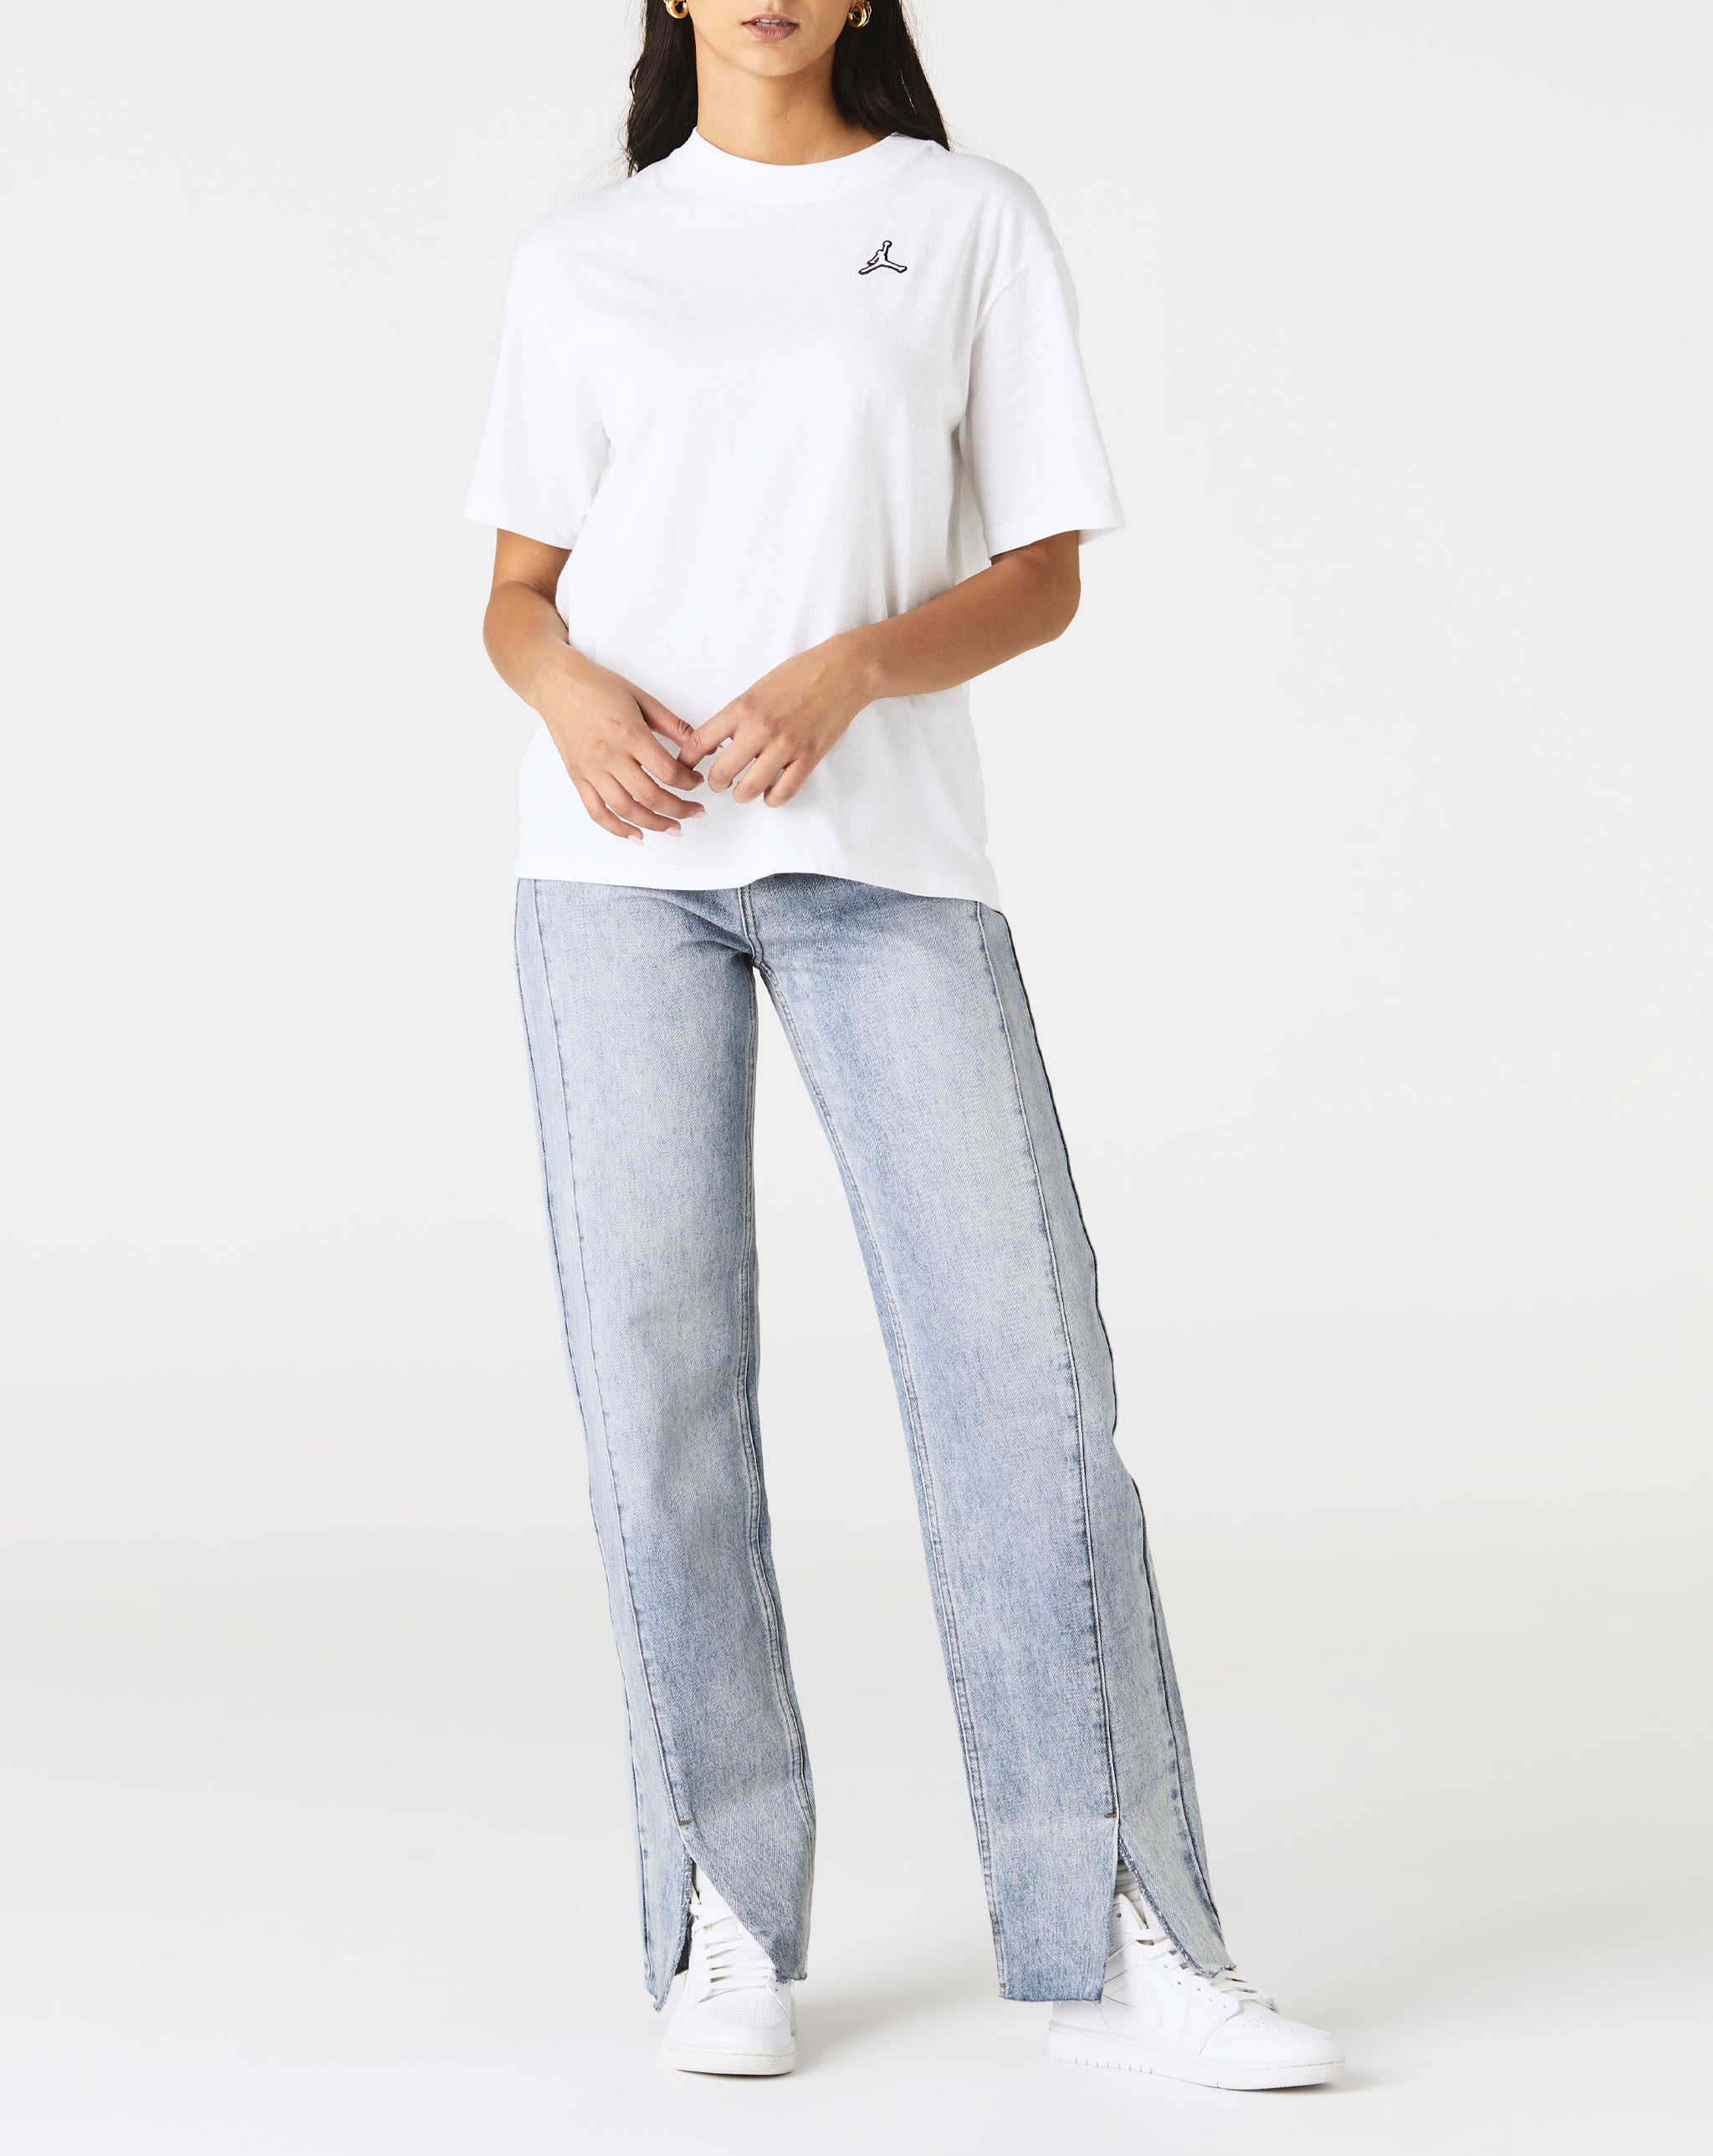 Air Jordan Women's Essential T-Shirt  - Cheap Urlfreeze Jordan outlet